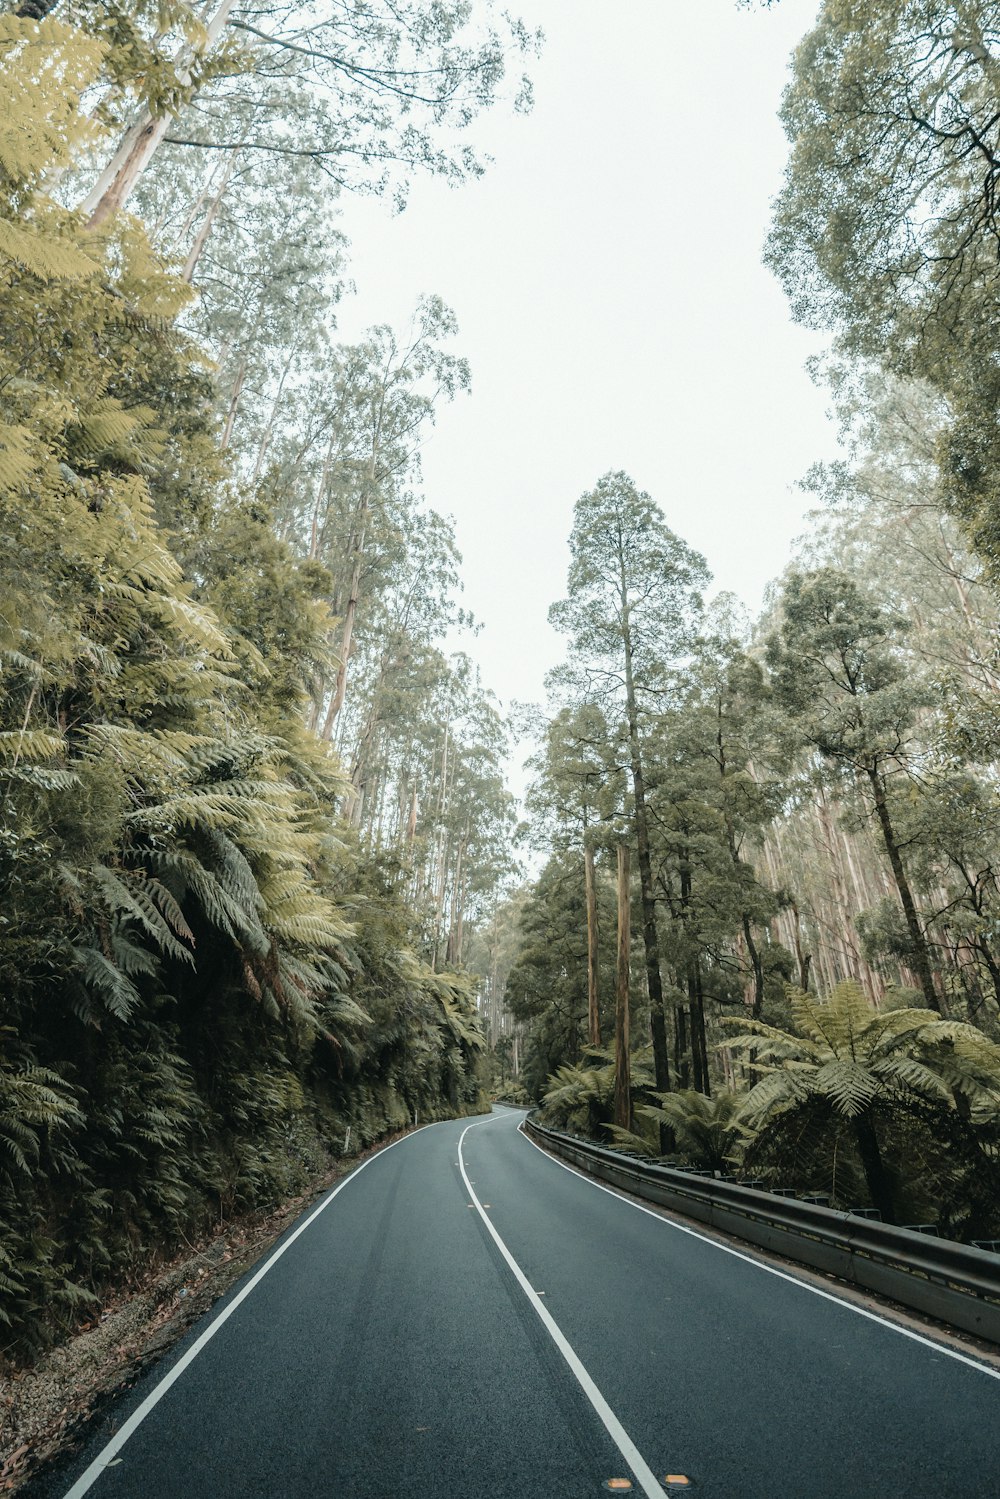 Carretera de asfalto gris entre árboles durante el día